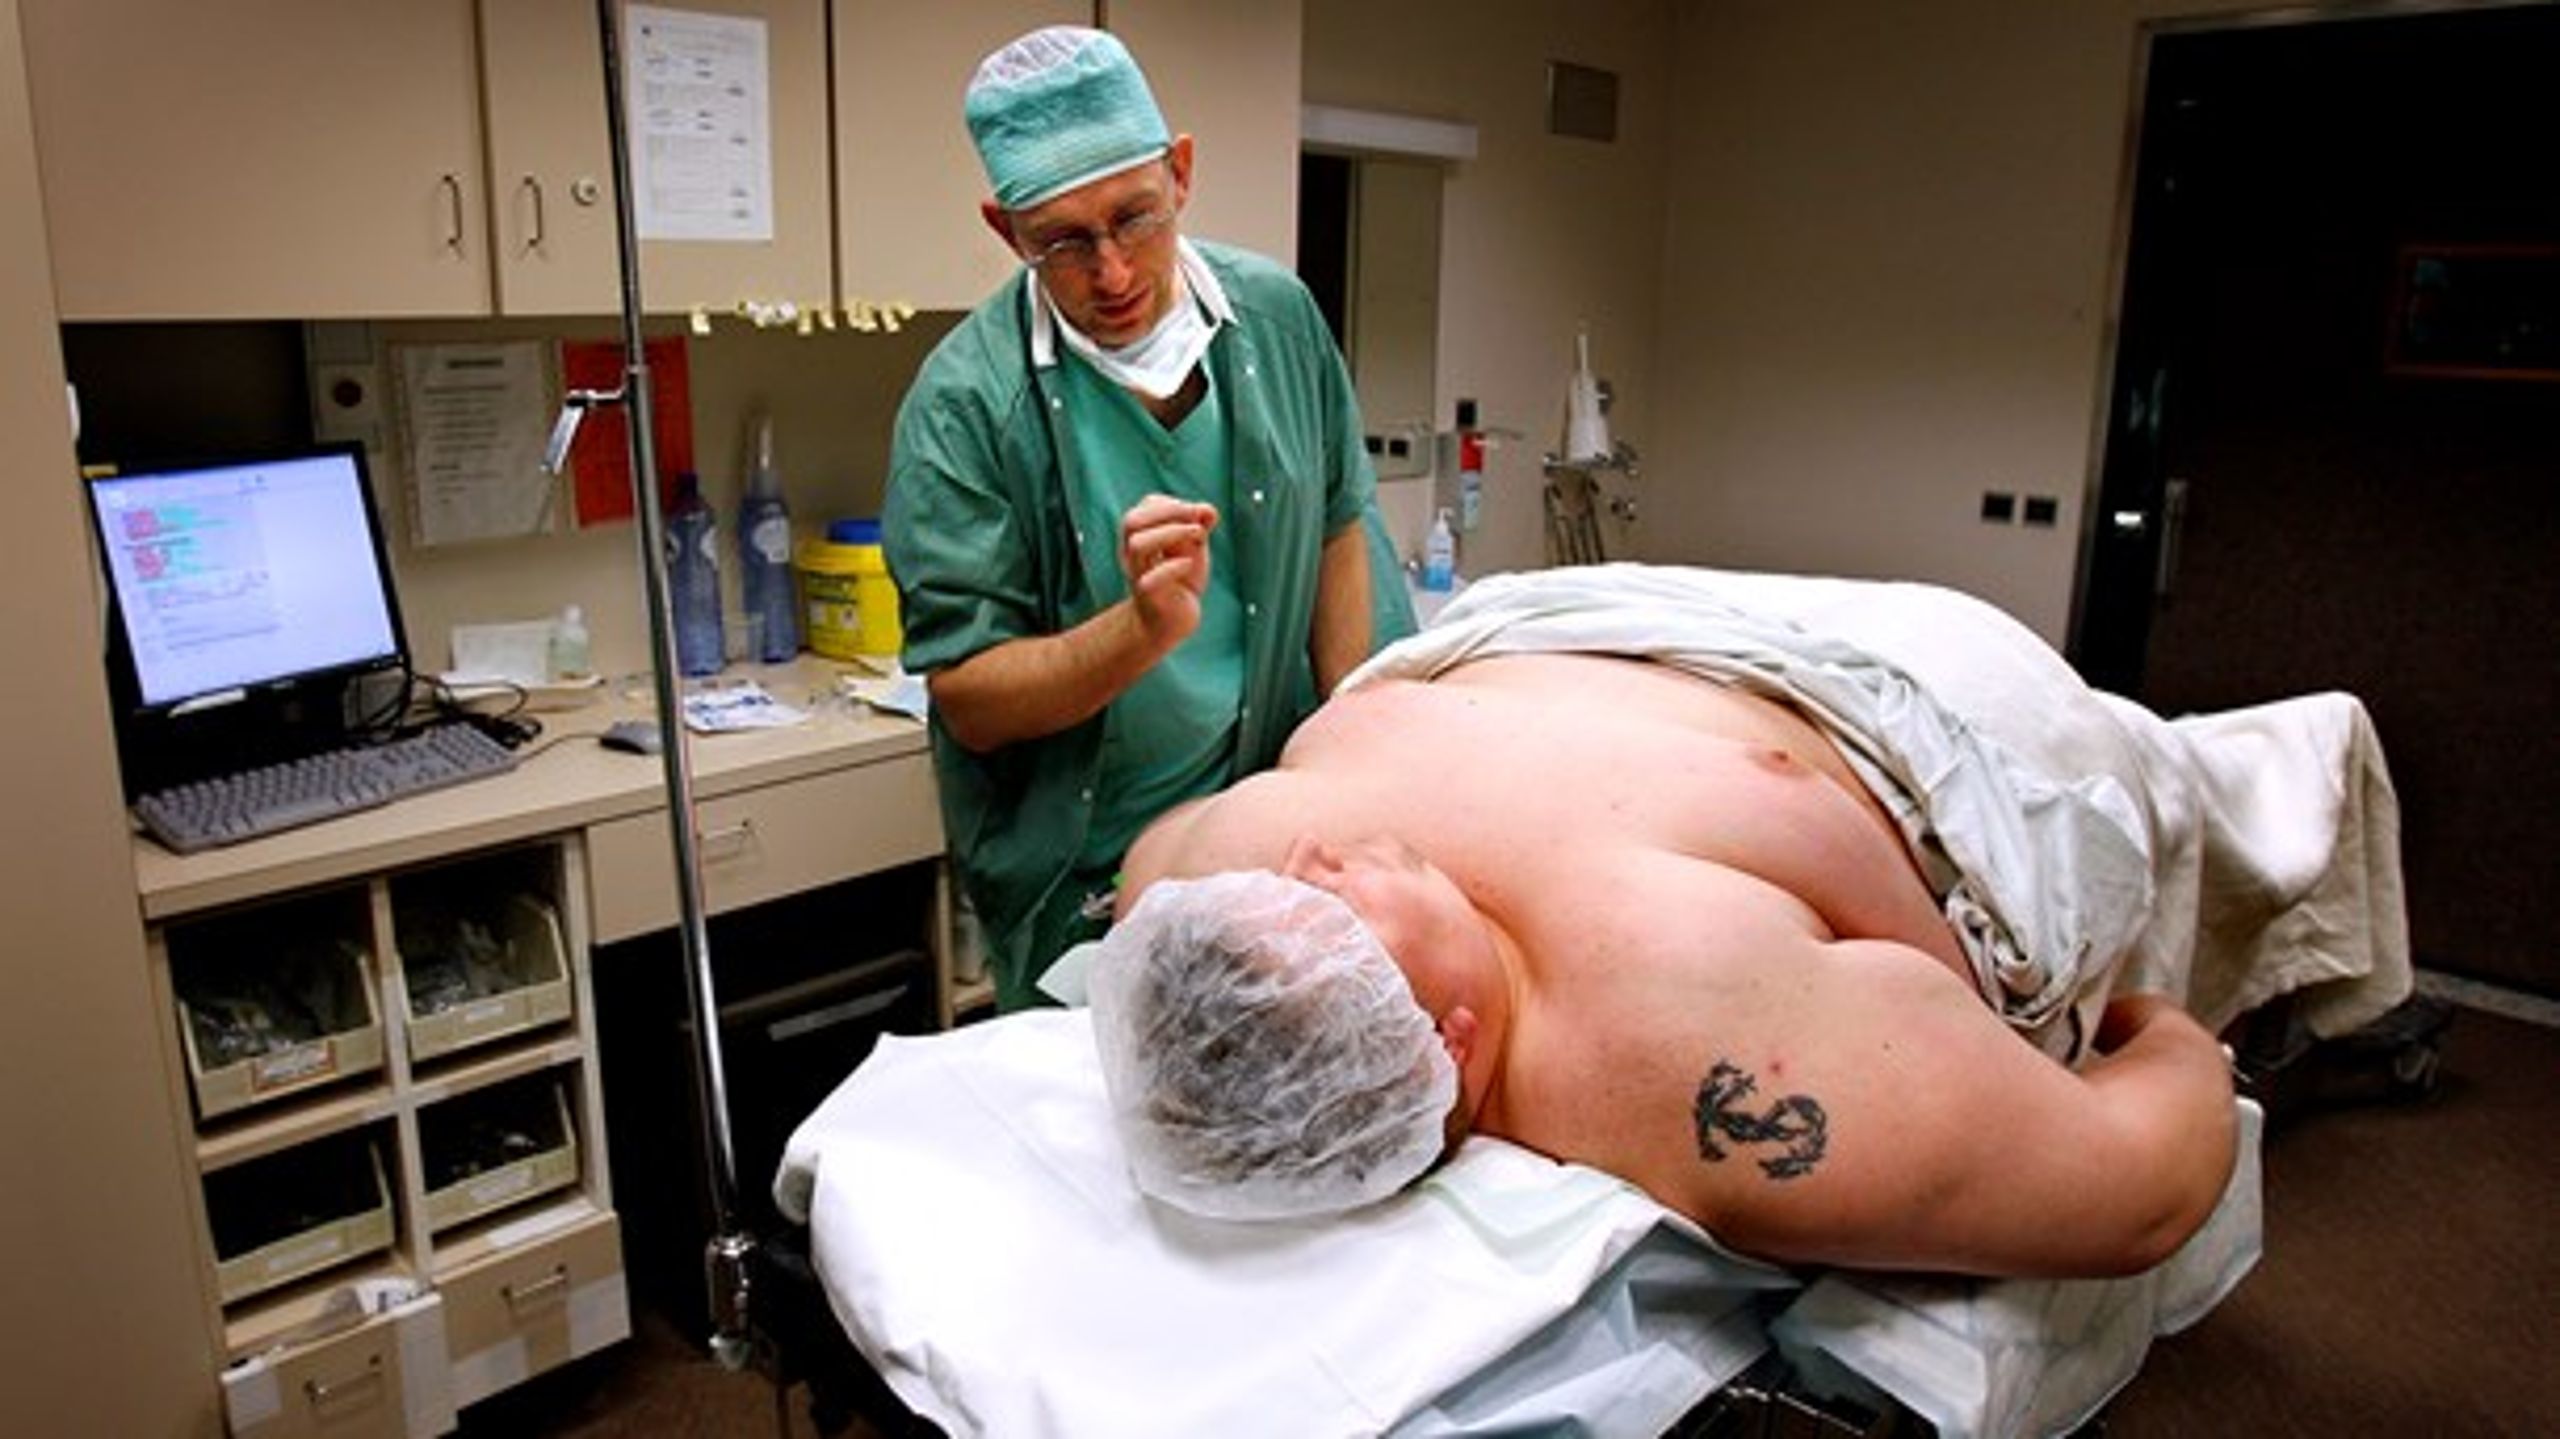 Patienter med svær overvægt – undtagen omkring en procent, der kvalificerer sig til en gastric-bypass-operation – har ingen steder at gå hen i sundhedsvæsenet, mener overlæge.